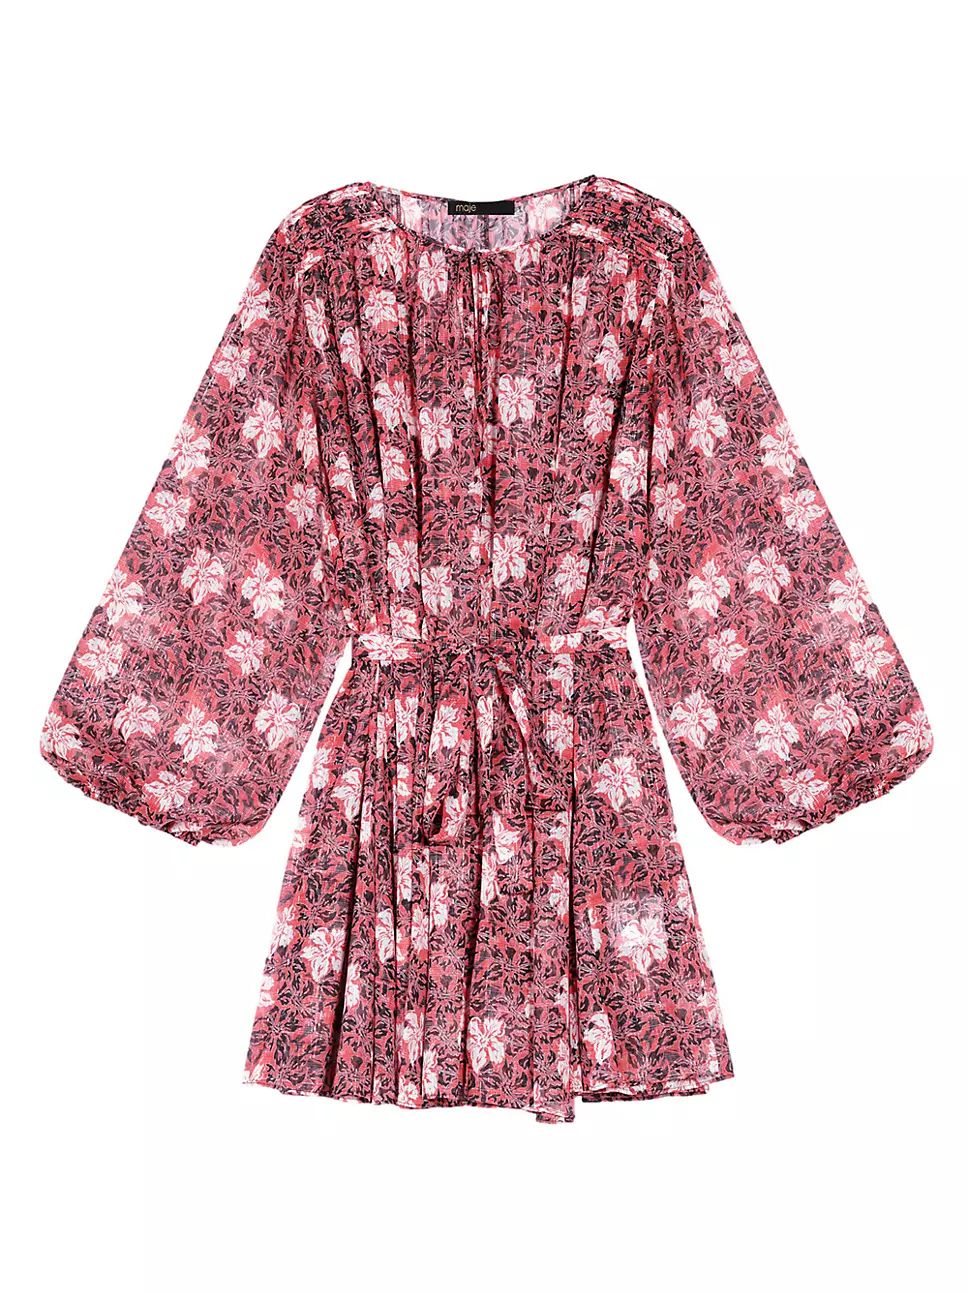 Maje Short Floral Dress | Saks Fifth Avenue